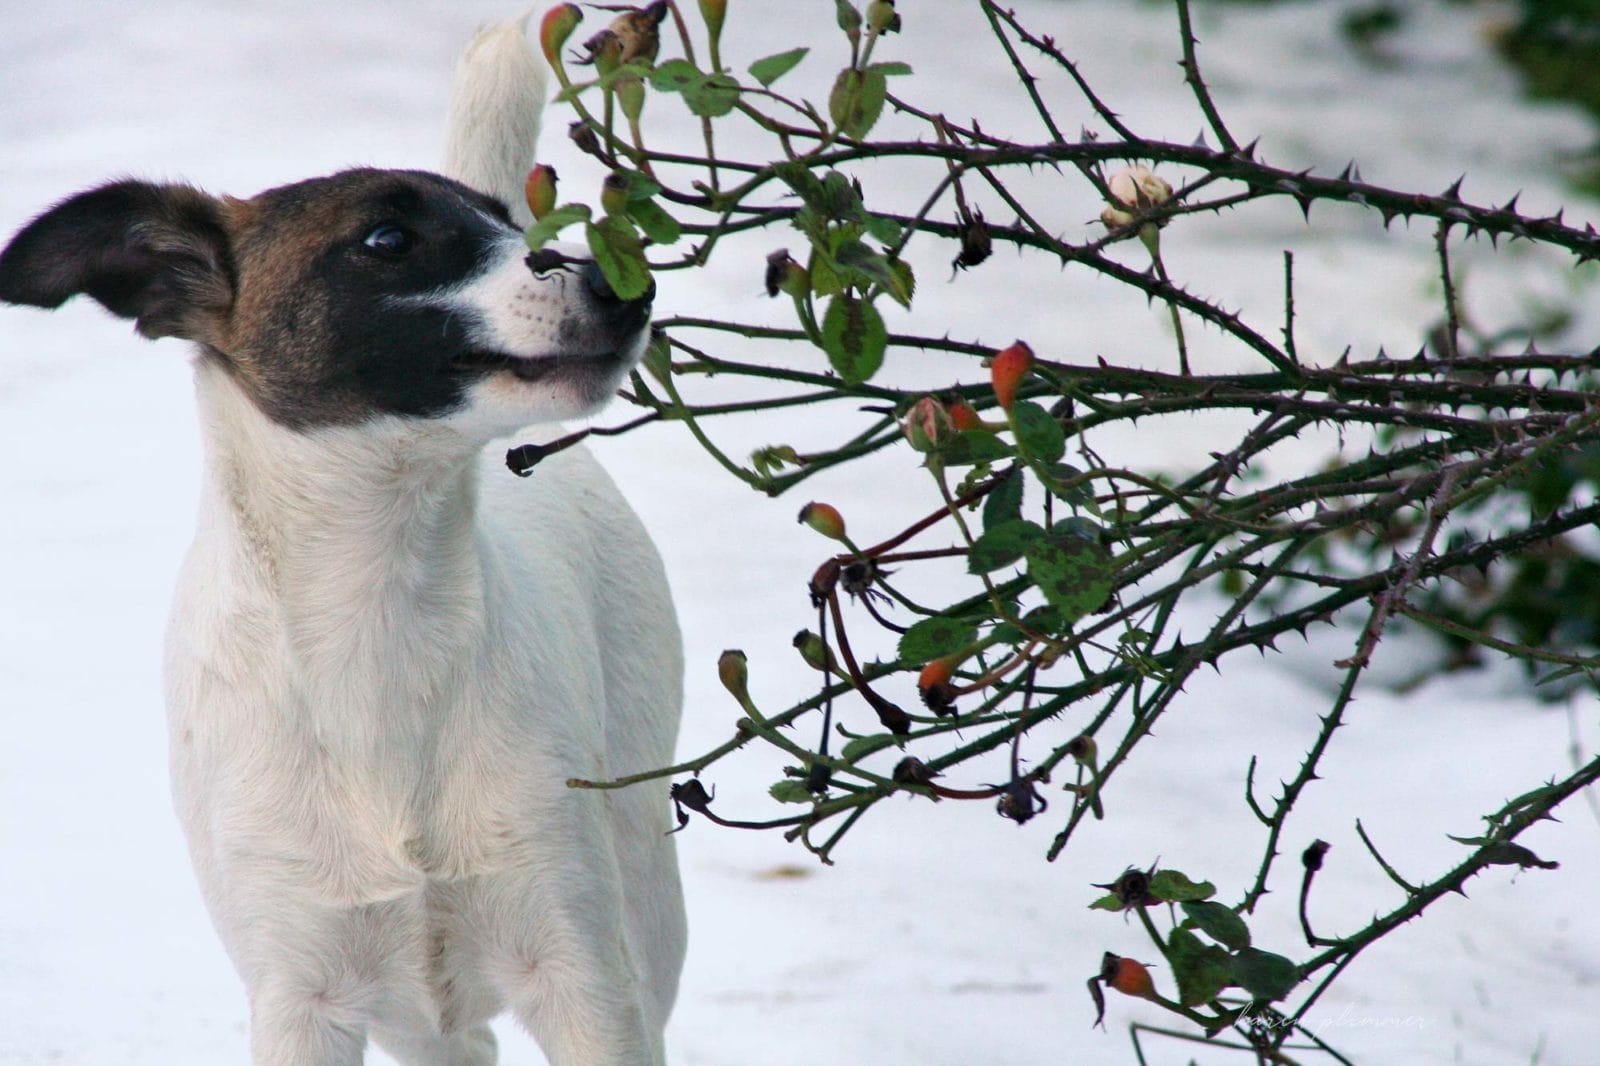 Alaska- smooth fox terrier sniffing rosebuds